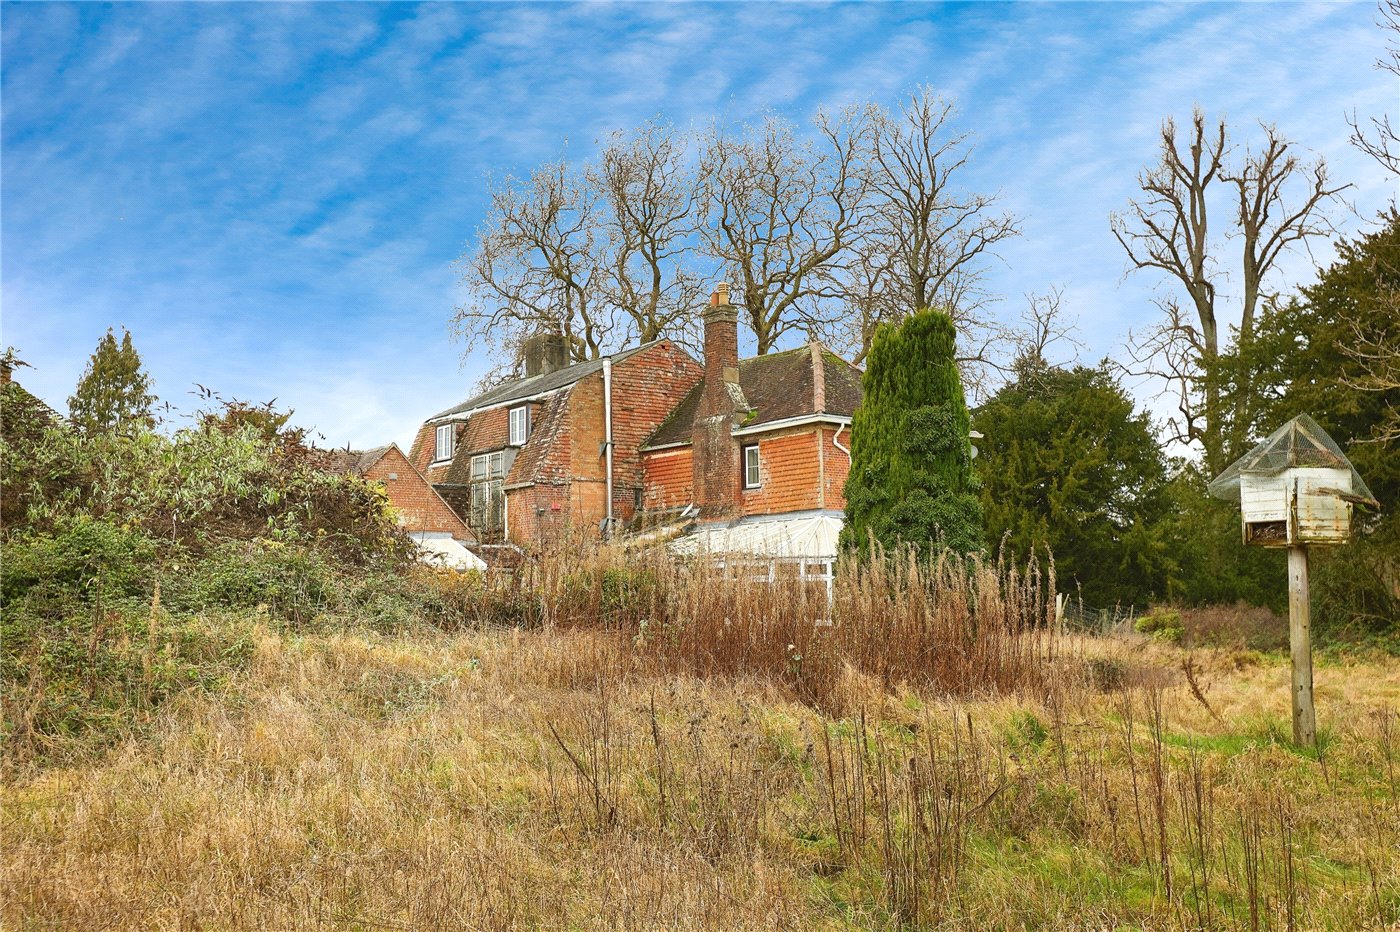 Homington Road, Coombe Bissett, Salisbury, Wiltshire, SP5 8 bedroom house in Coombe Bissett